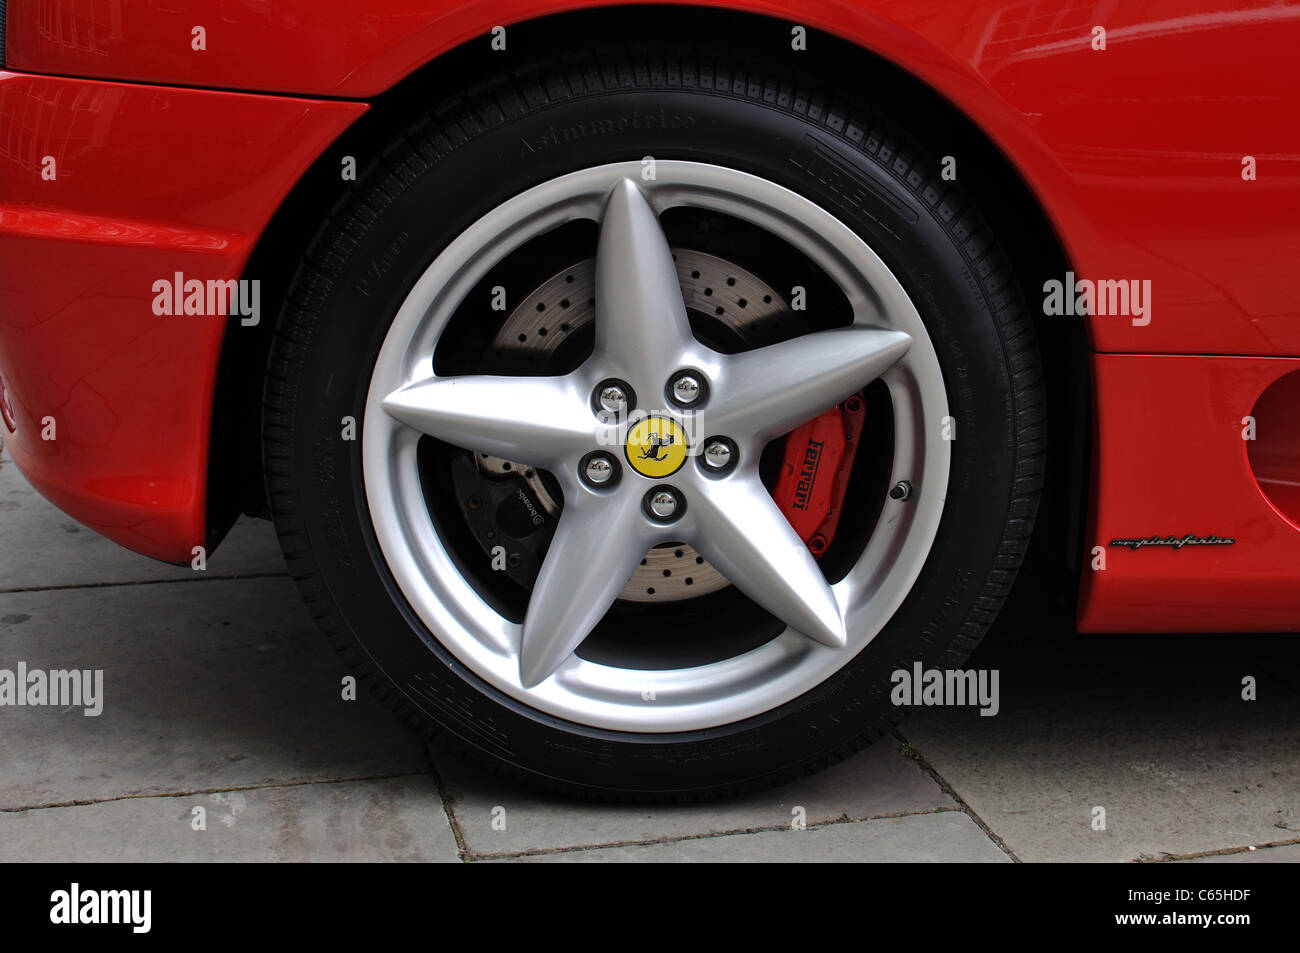 Ferrari wheel Stock Photo